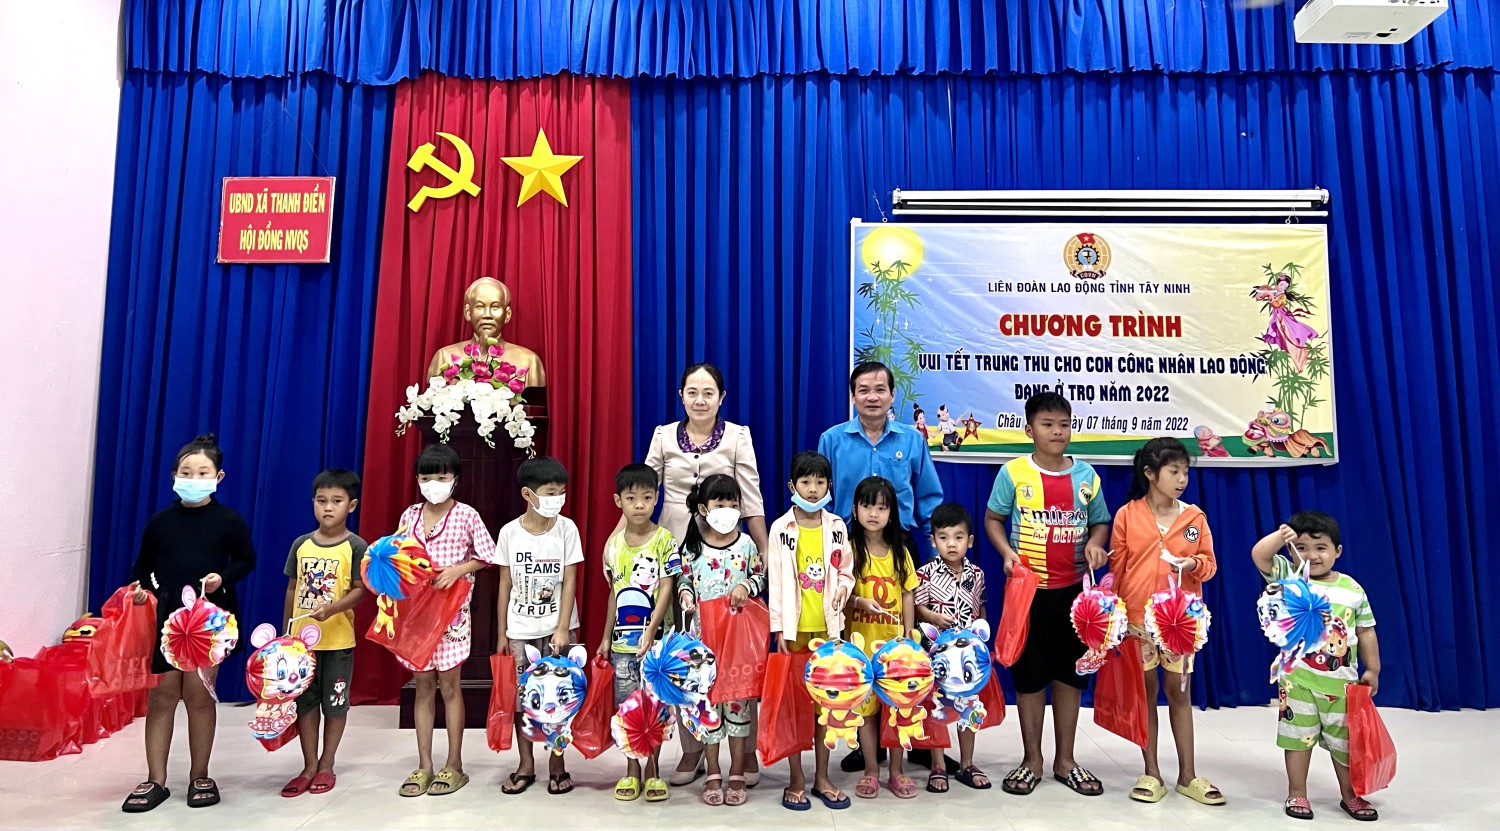 LĐLĐ tỉnh Tây Ninh: Tổ chức vui tết trung thu cho con công nhân lao động đang ở trọ năm 2022